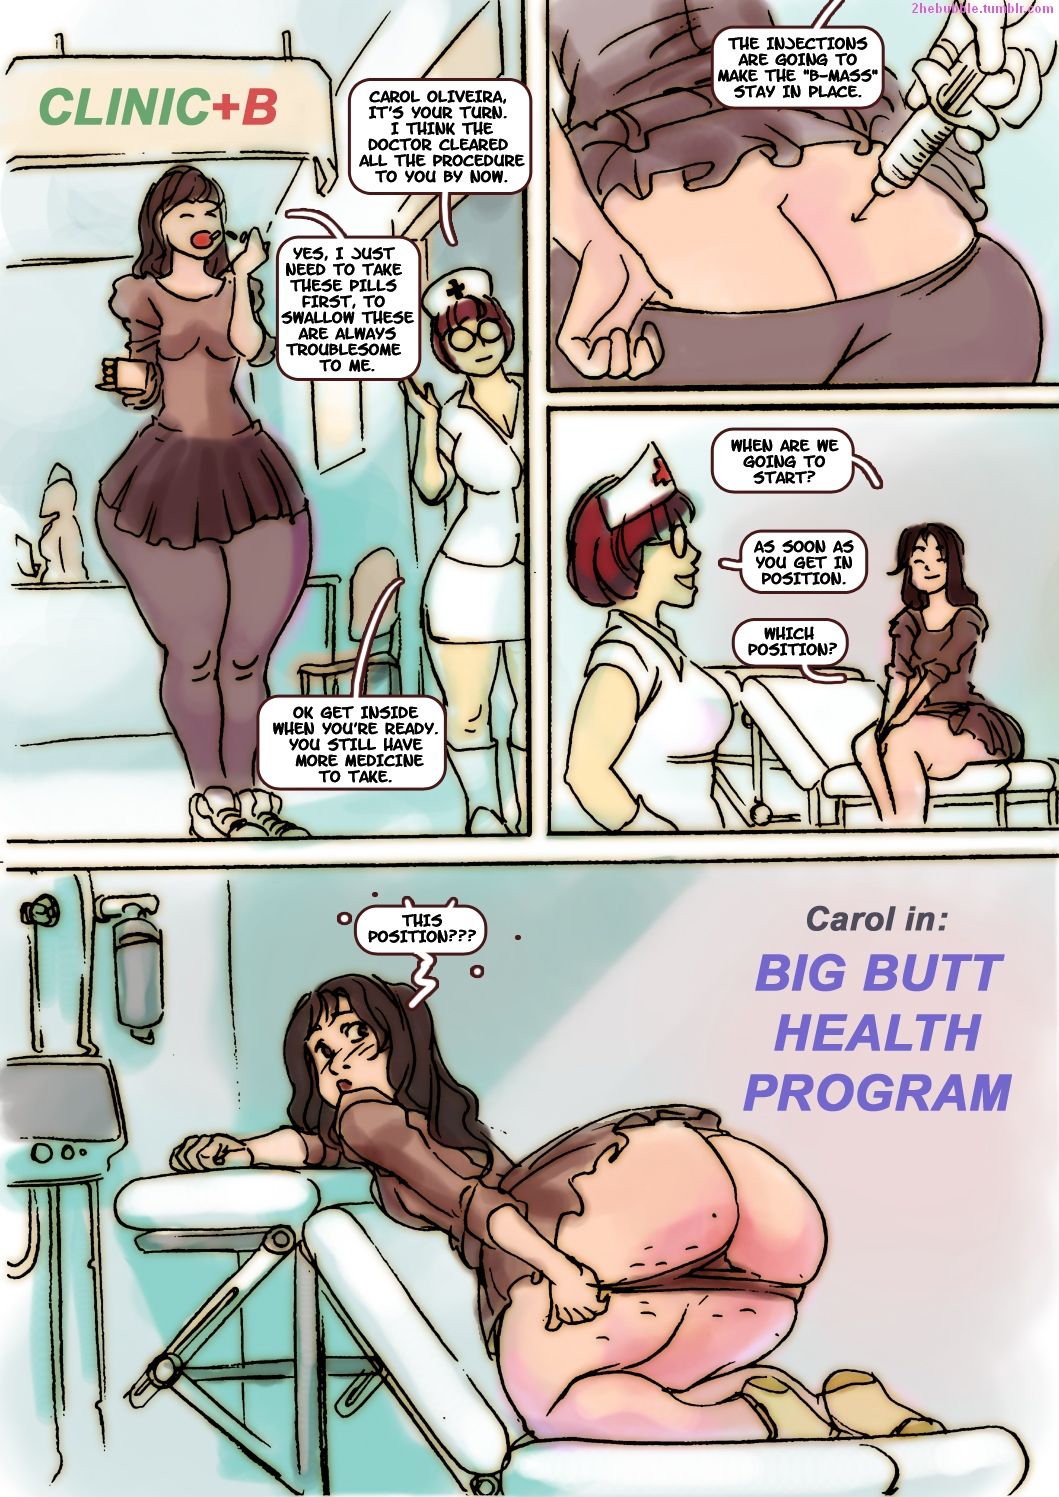 Big Butt Cartoon Porn - Big Butt Health Program comic porn - HD Porn Comics